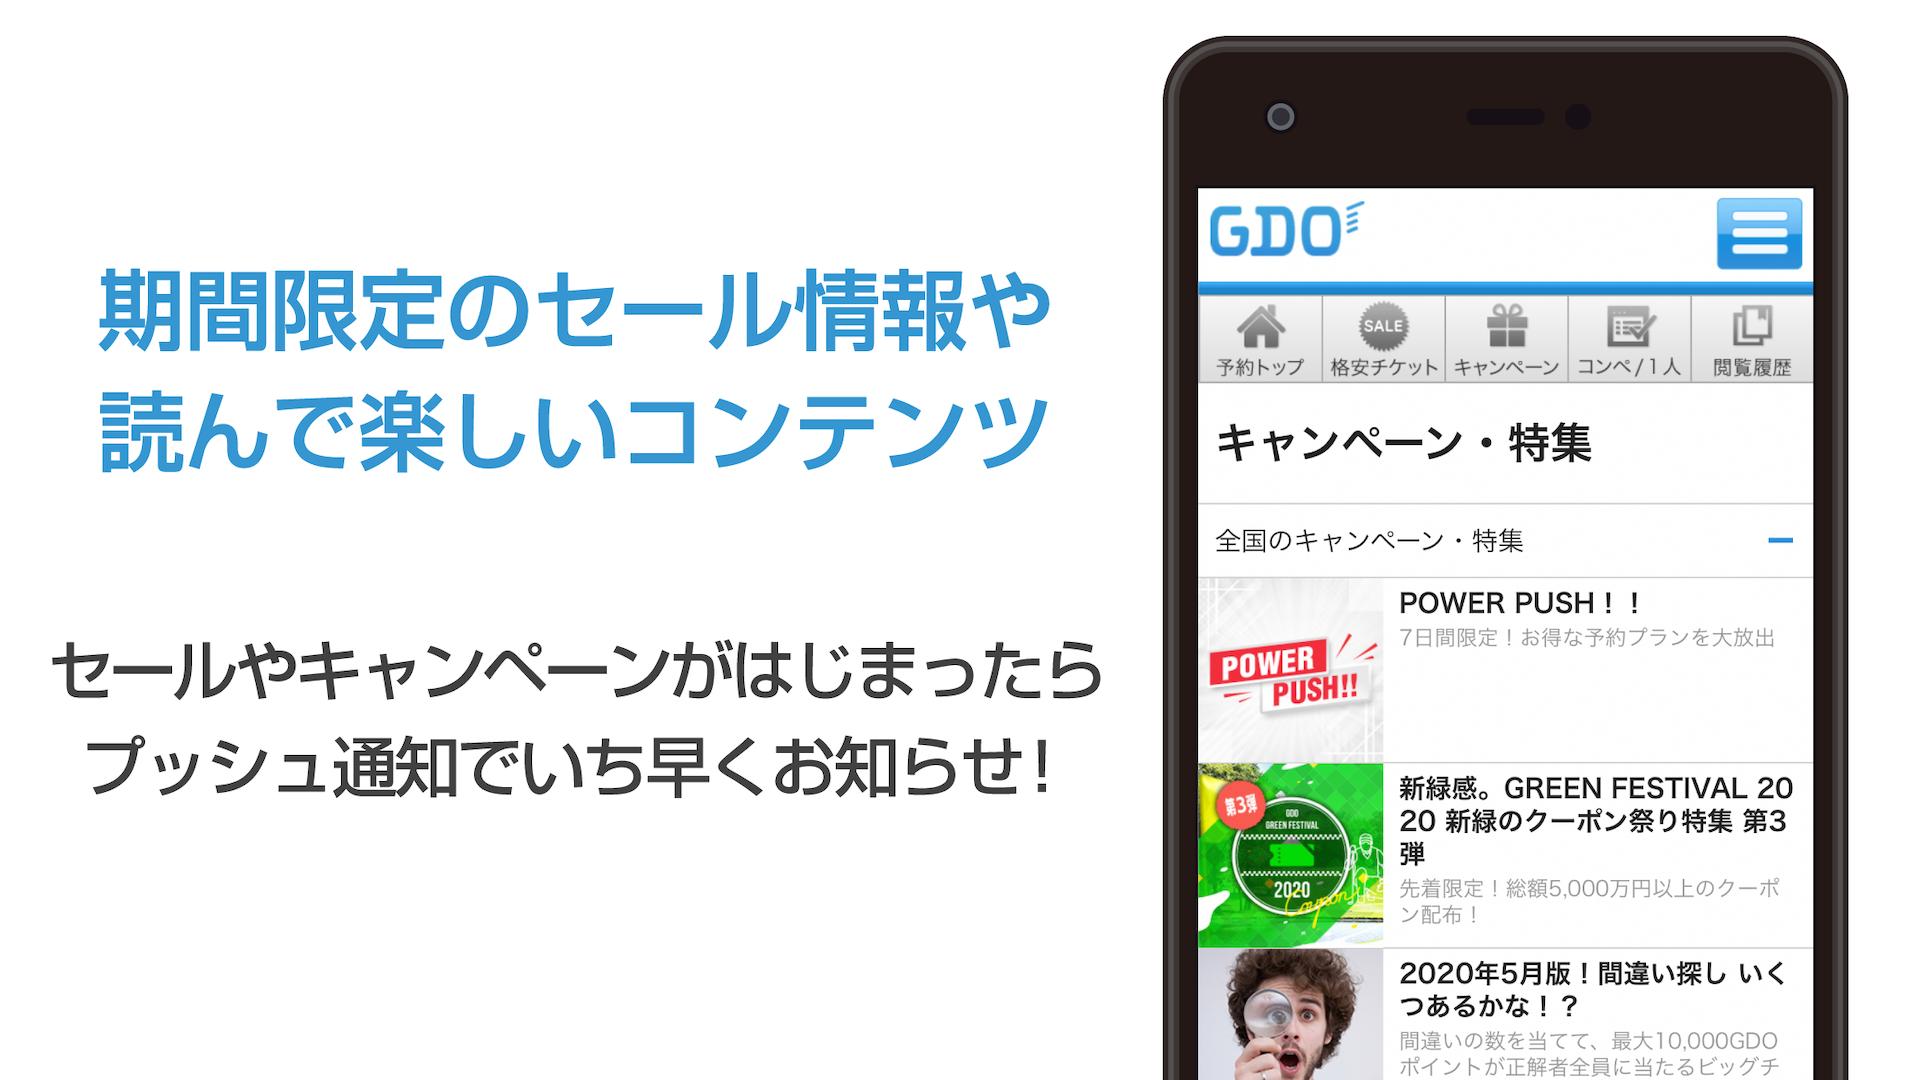 道民専用 Gdoゴルフ場予約アプリ For Android Apk Download